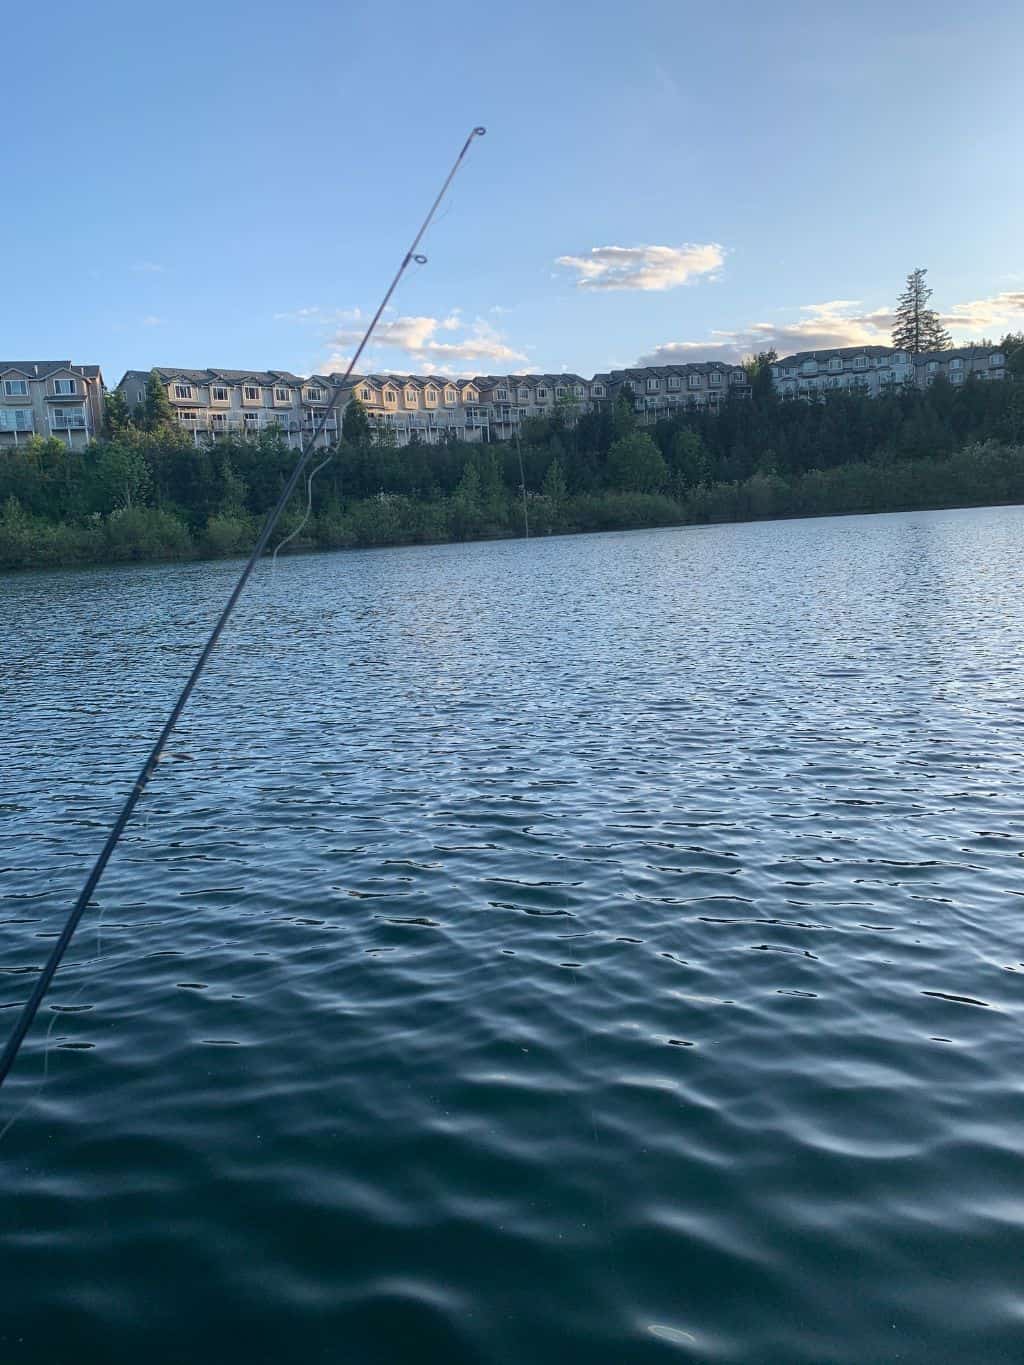 Progress Lake Park Fishing